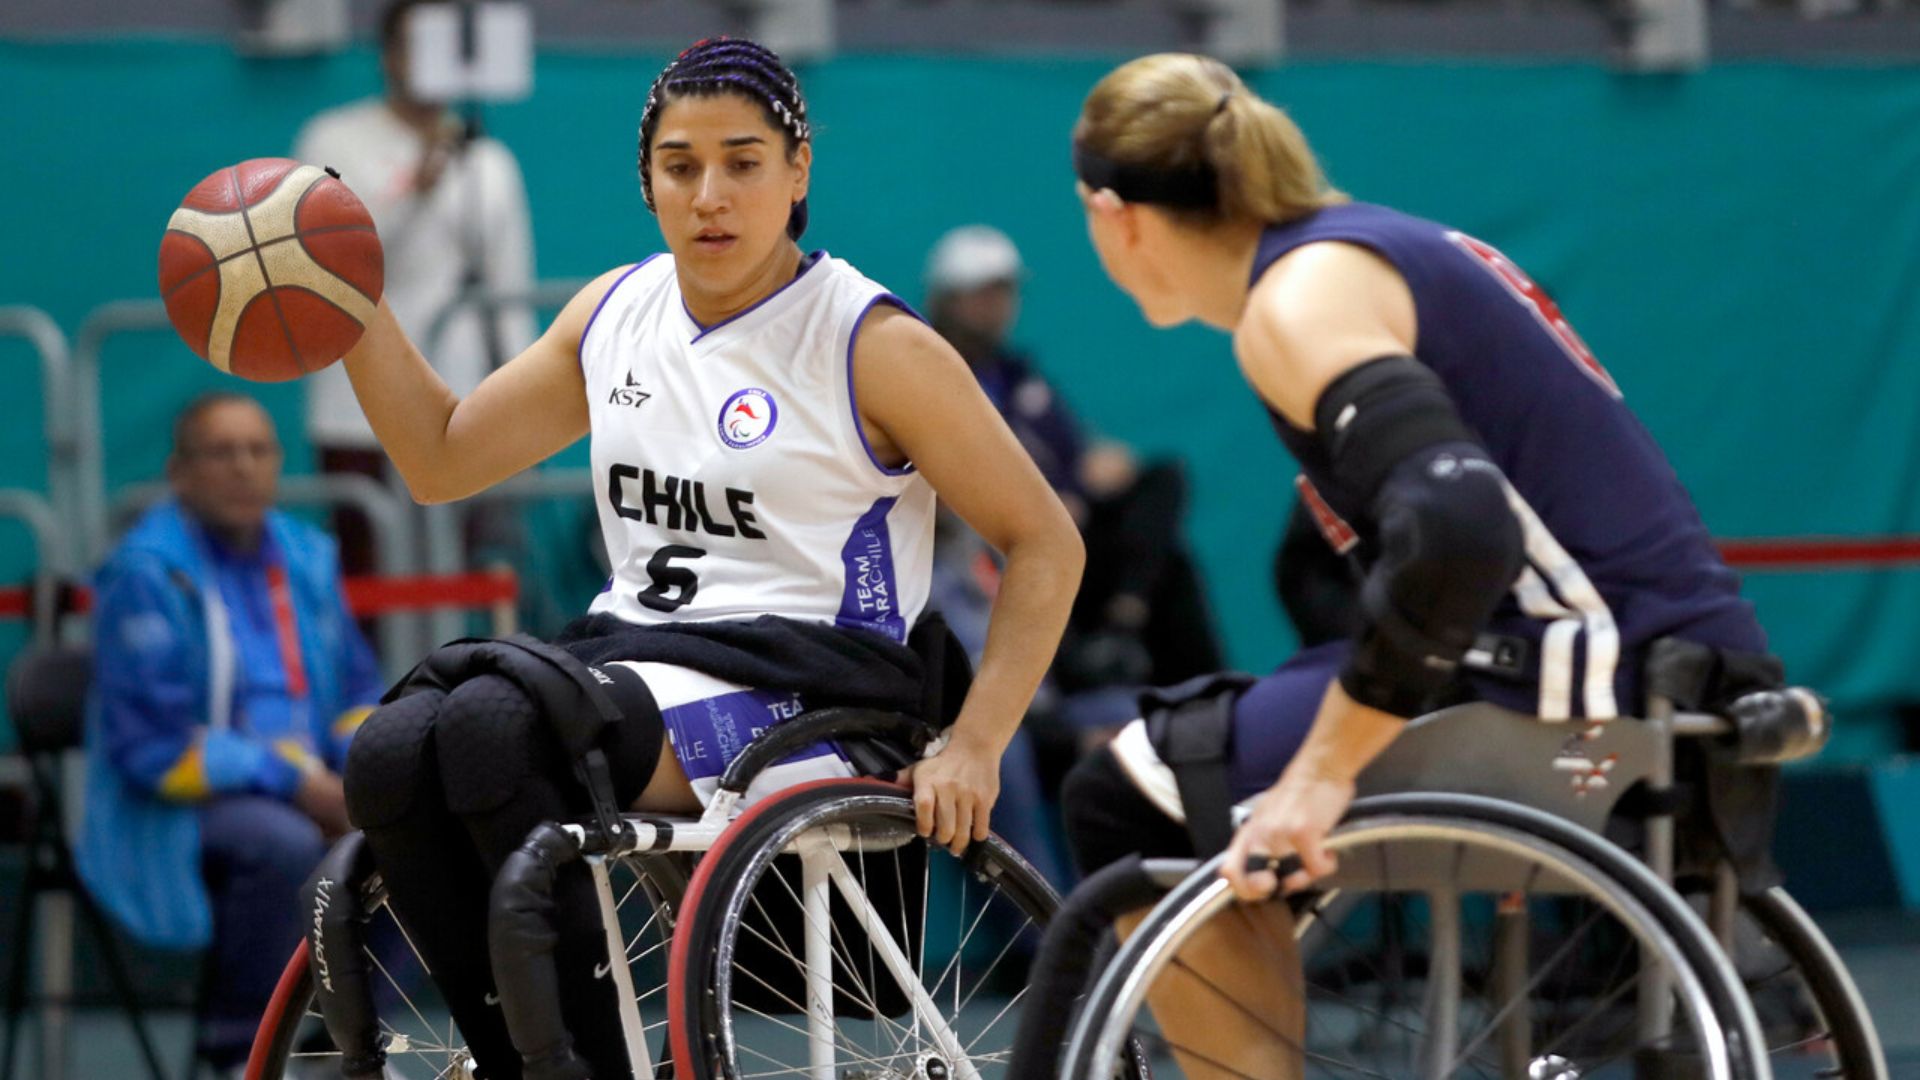 Estados Unidos venció por 96-10 a Chile en el básquetbol en silla de ruedas